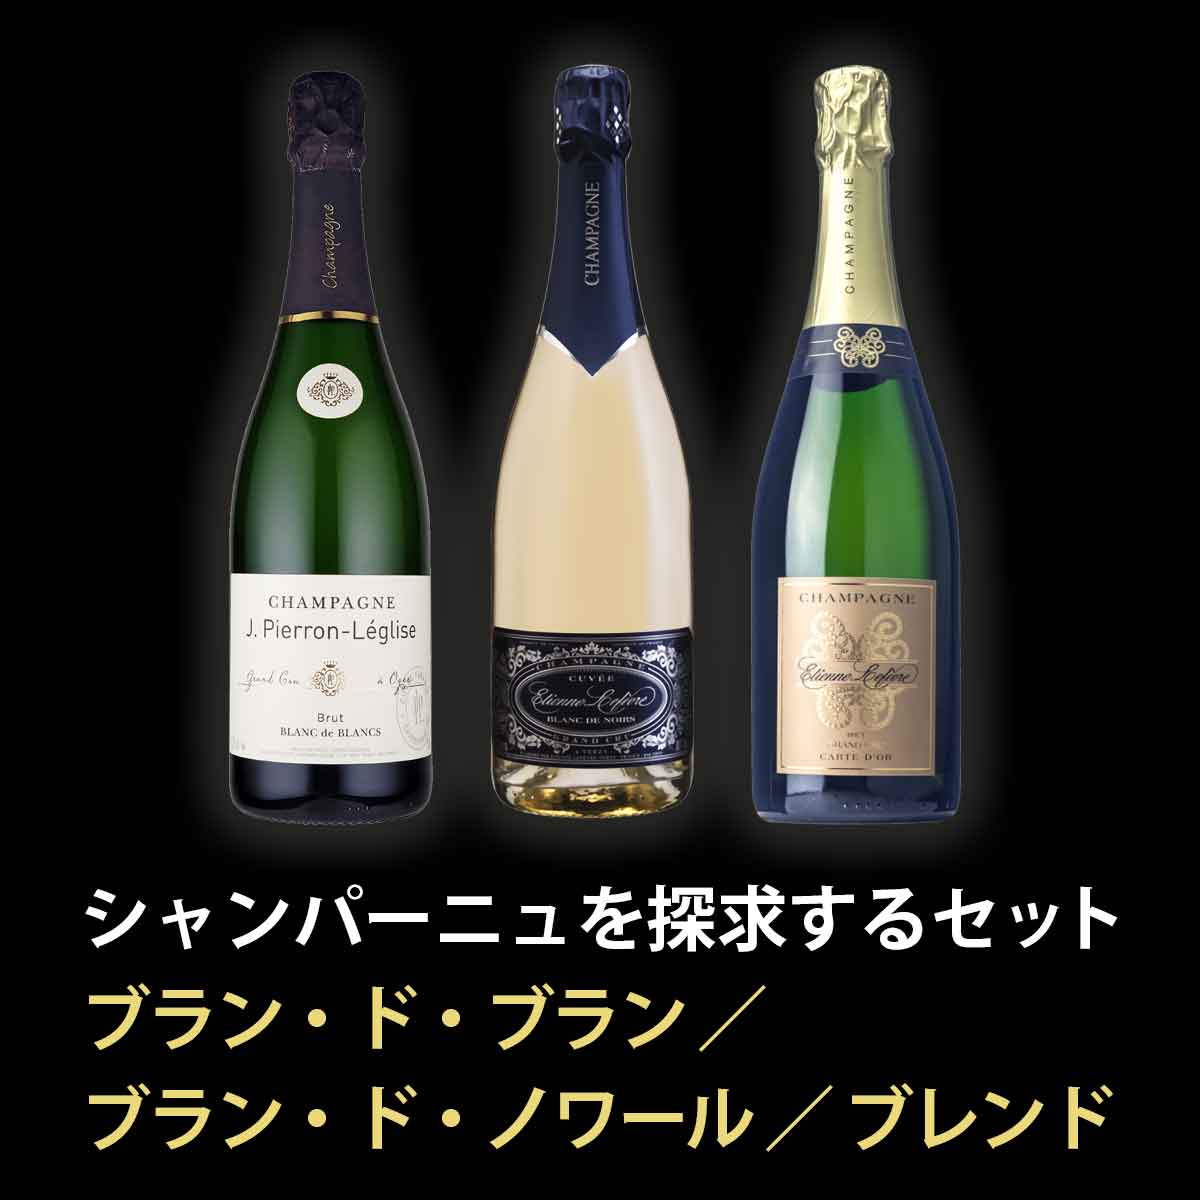 シャンパーニュ (シャンパン) ブラン・ド・ブラン ブラン・ド・ノワール ブレンド 3本セット ギフト 贈り物におすすめ |  ワイン通販のフィラディスワインクラブ